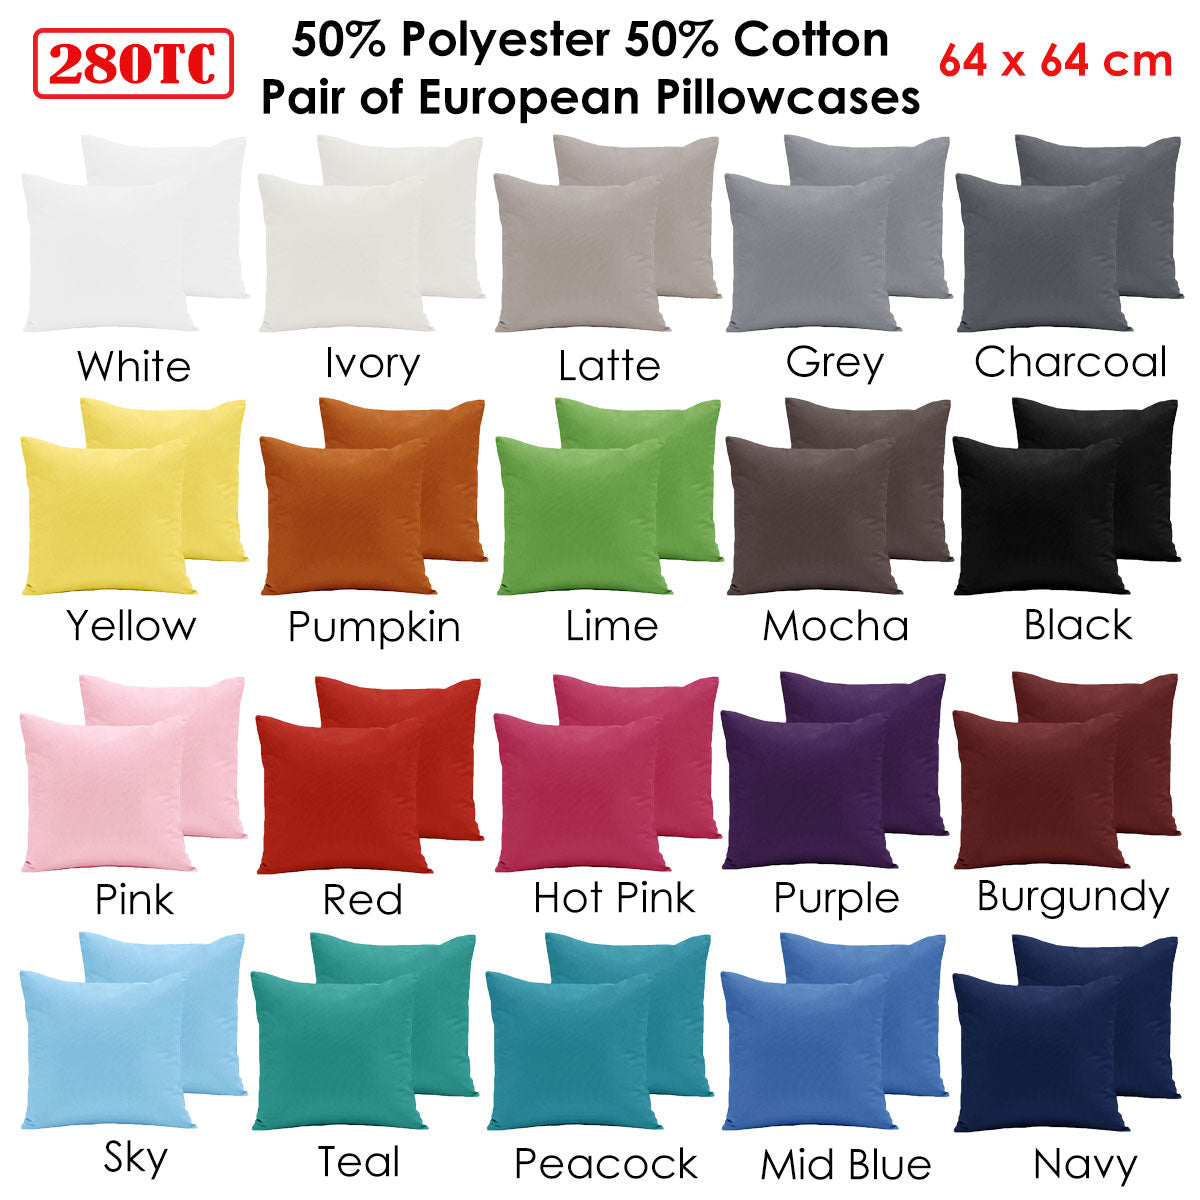 Pair of  280TC Polyester Cotton European Pillowcases Navy